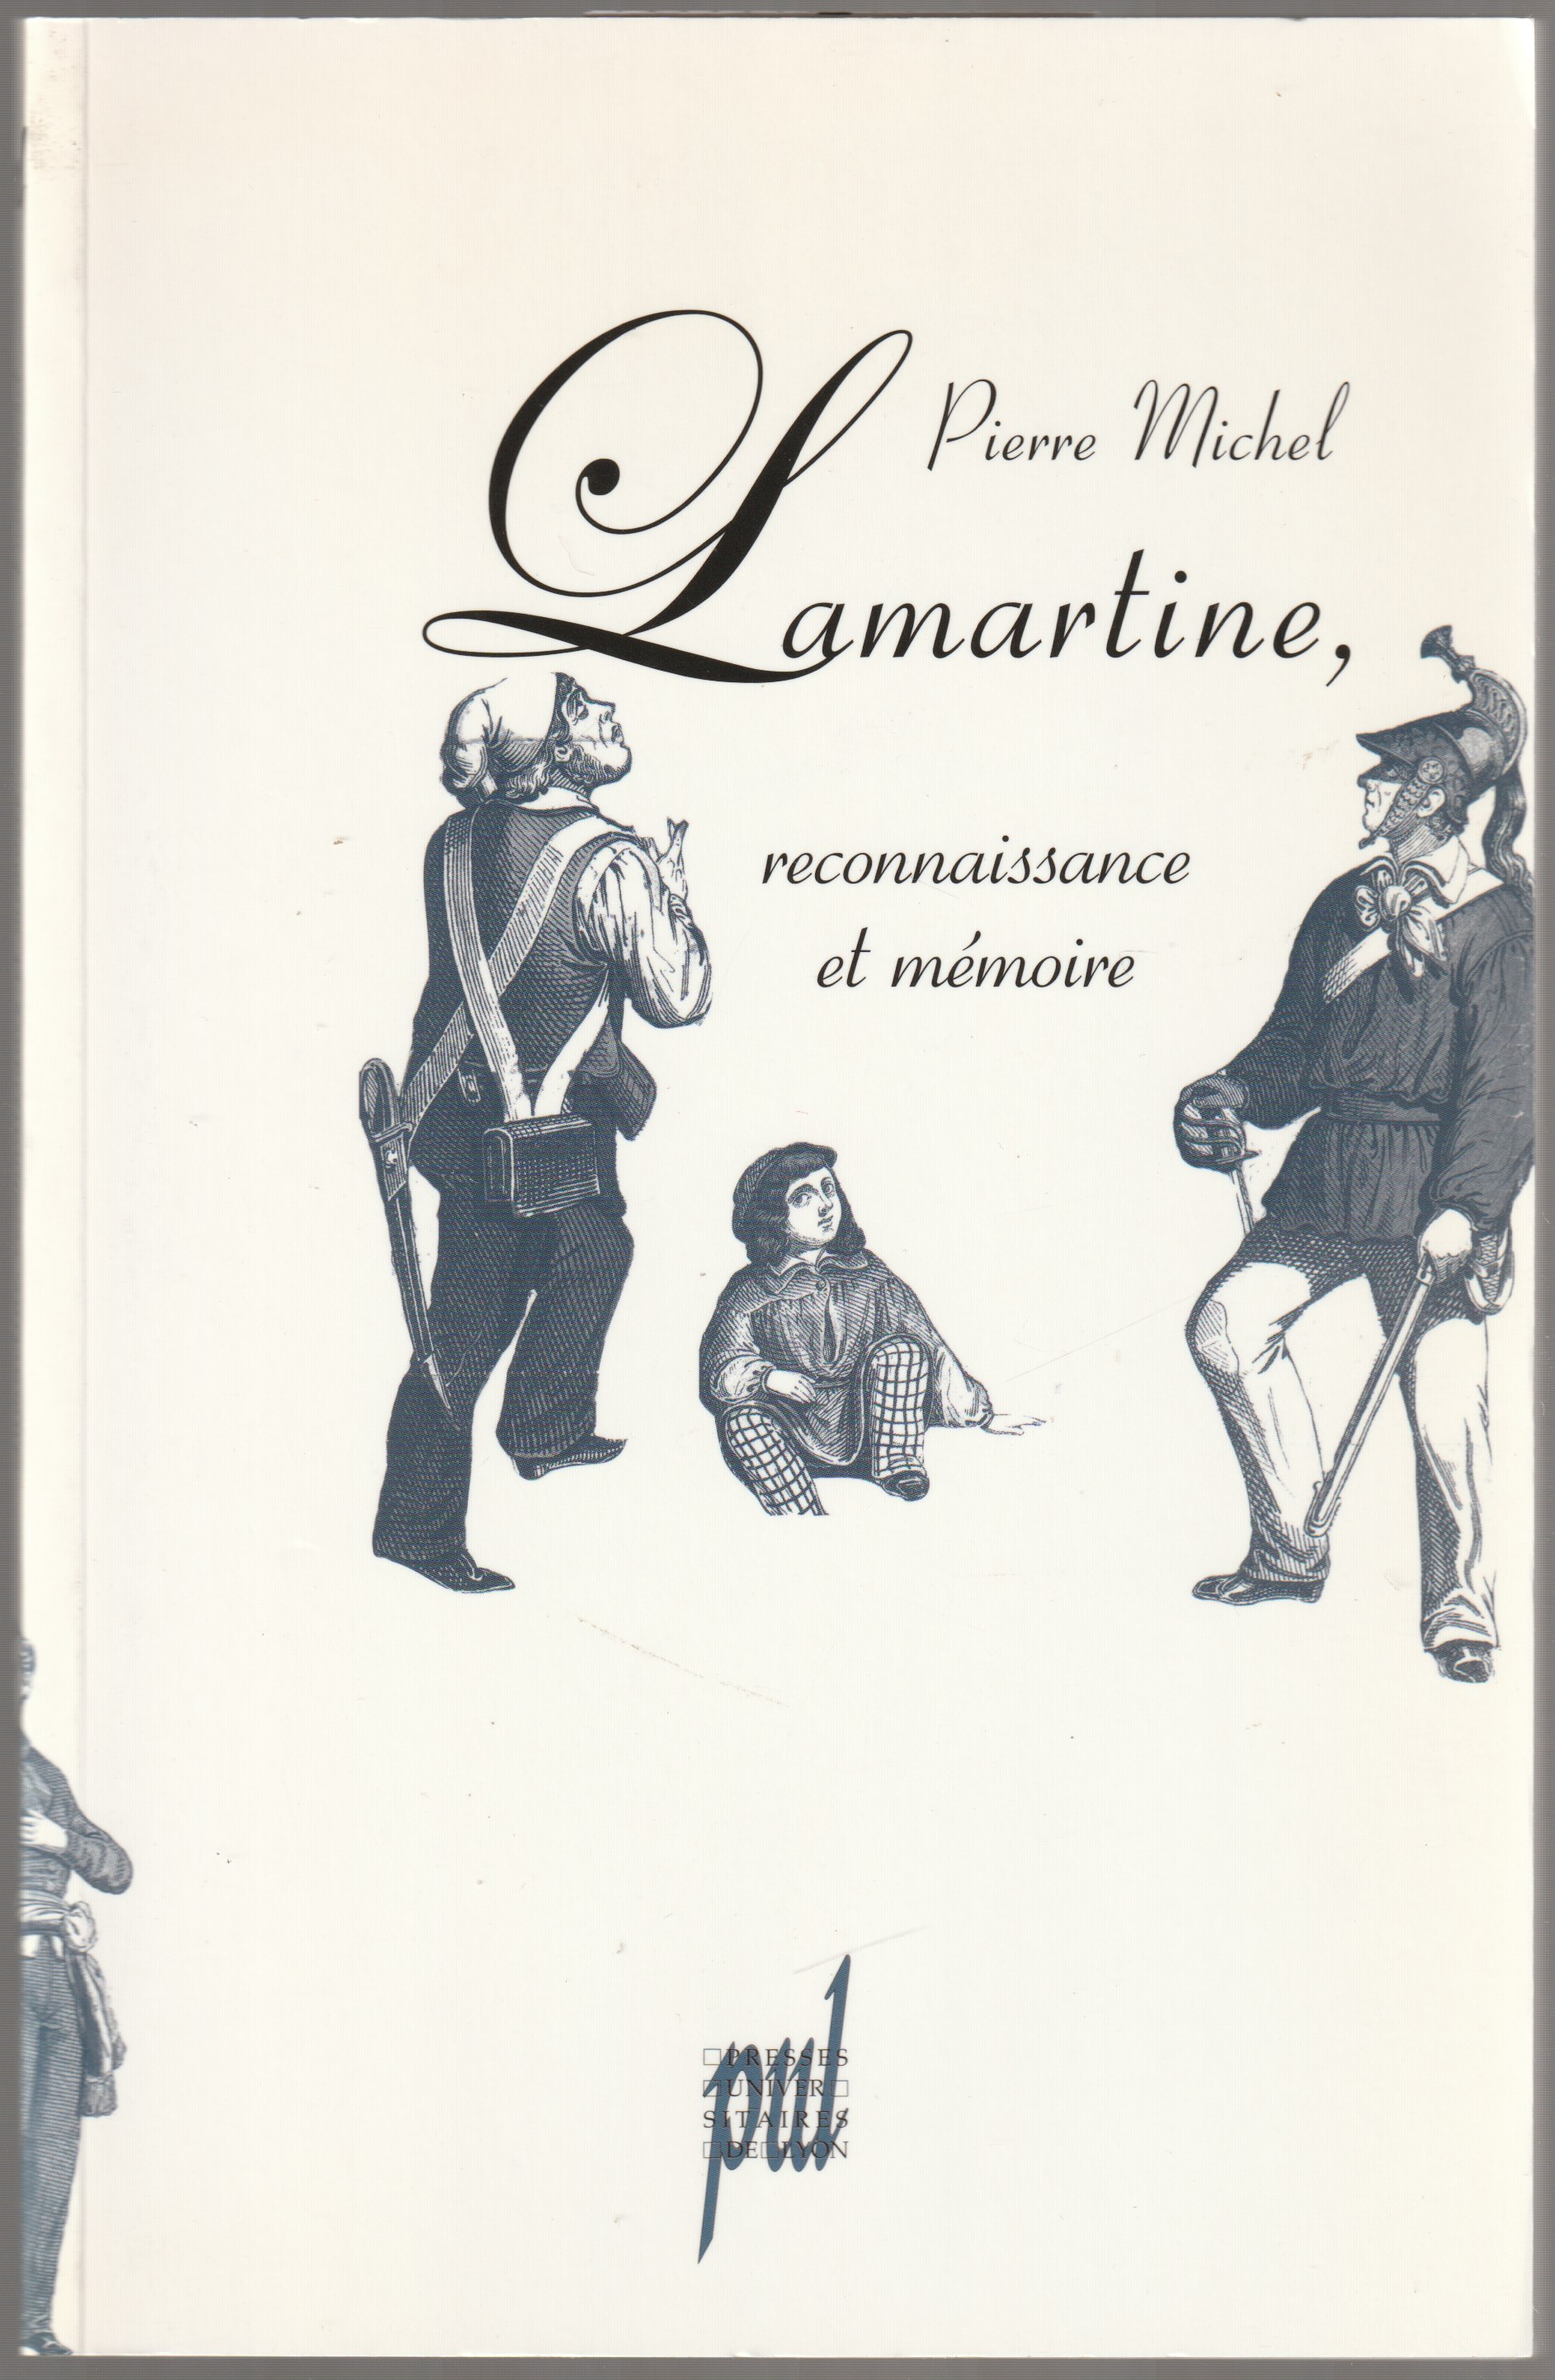 Lamartine, reconnaissance et memoire.